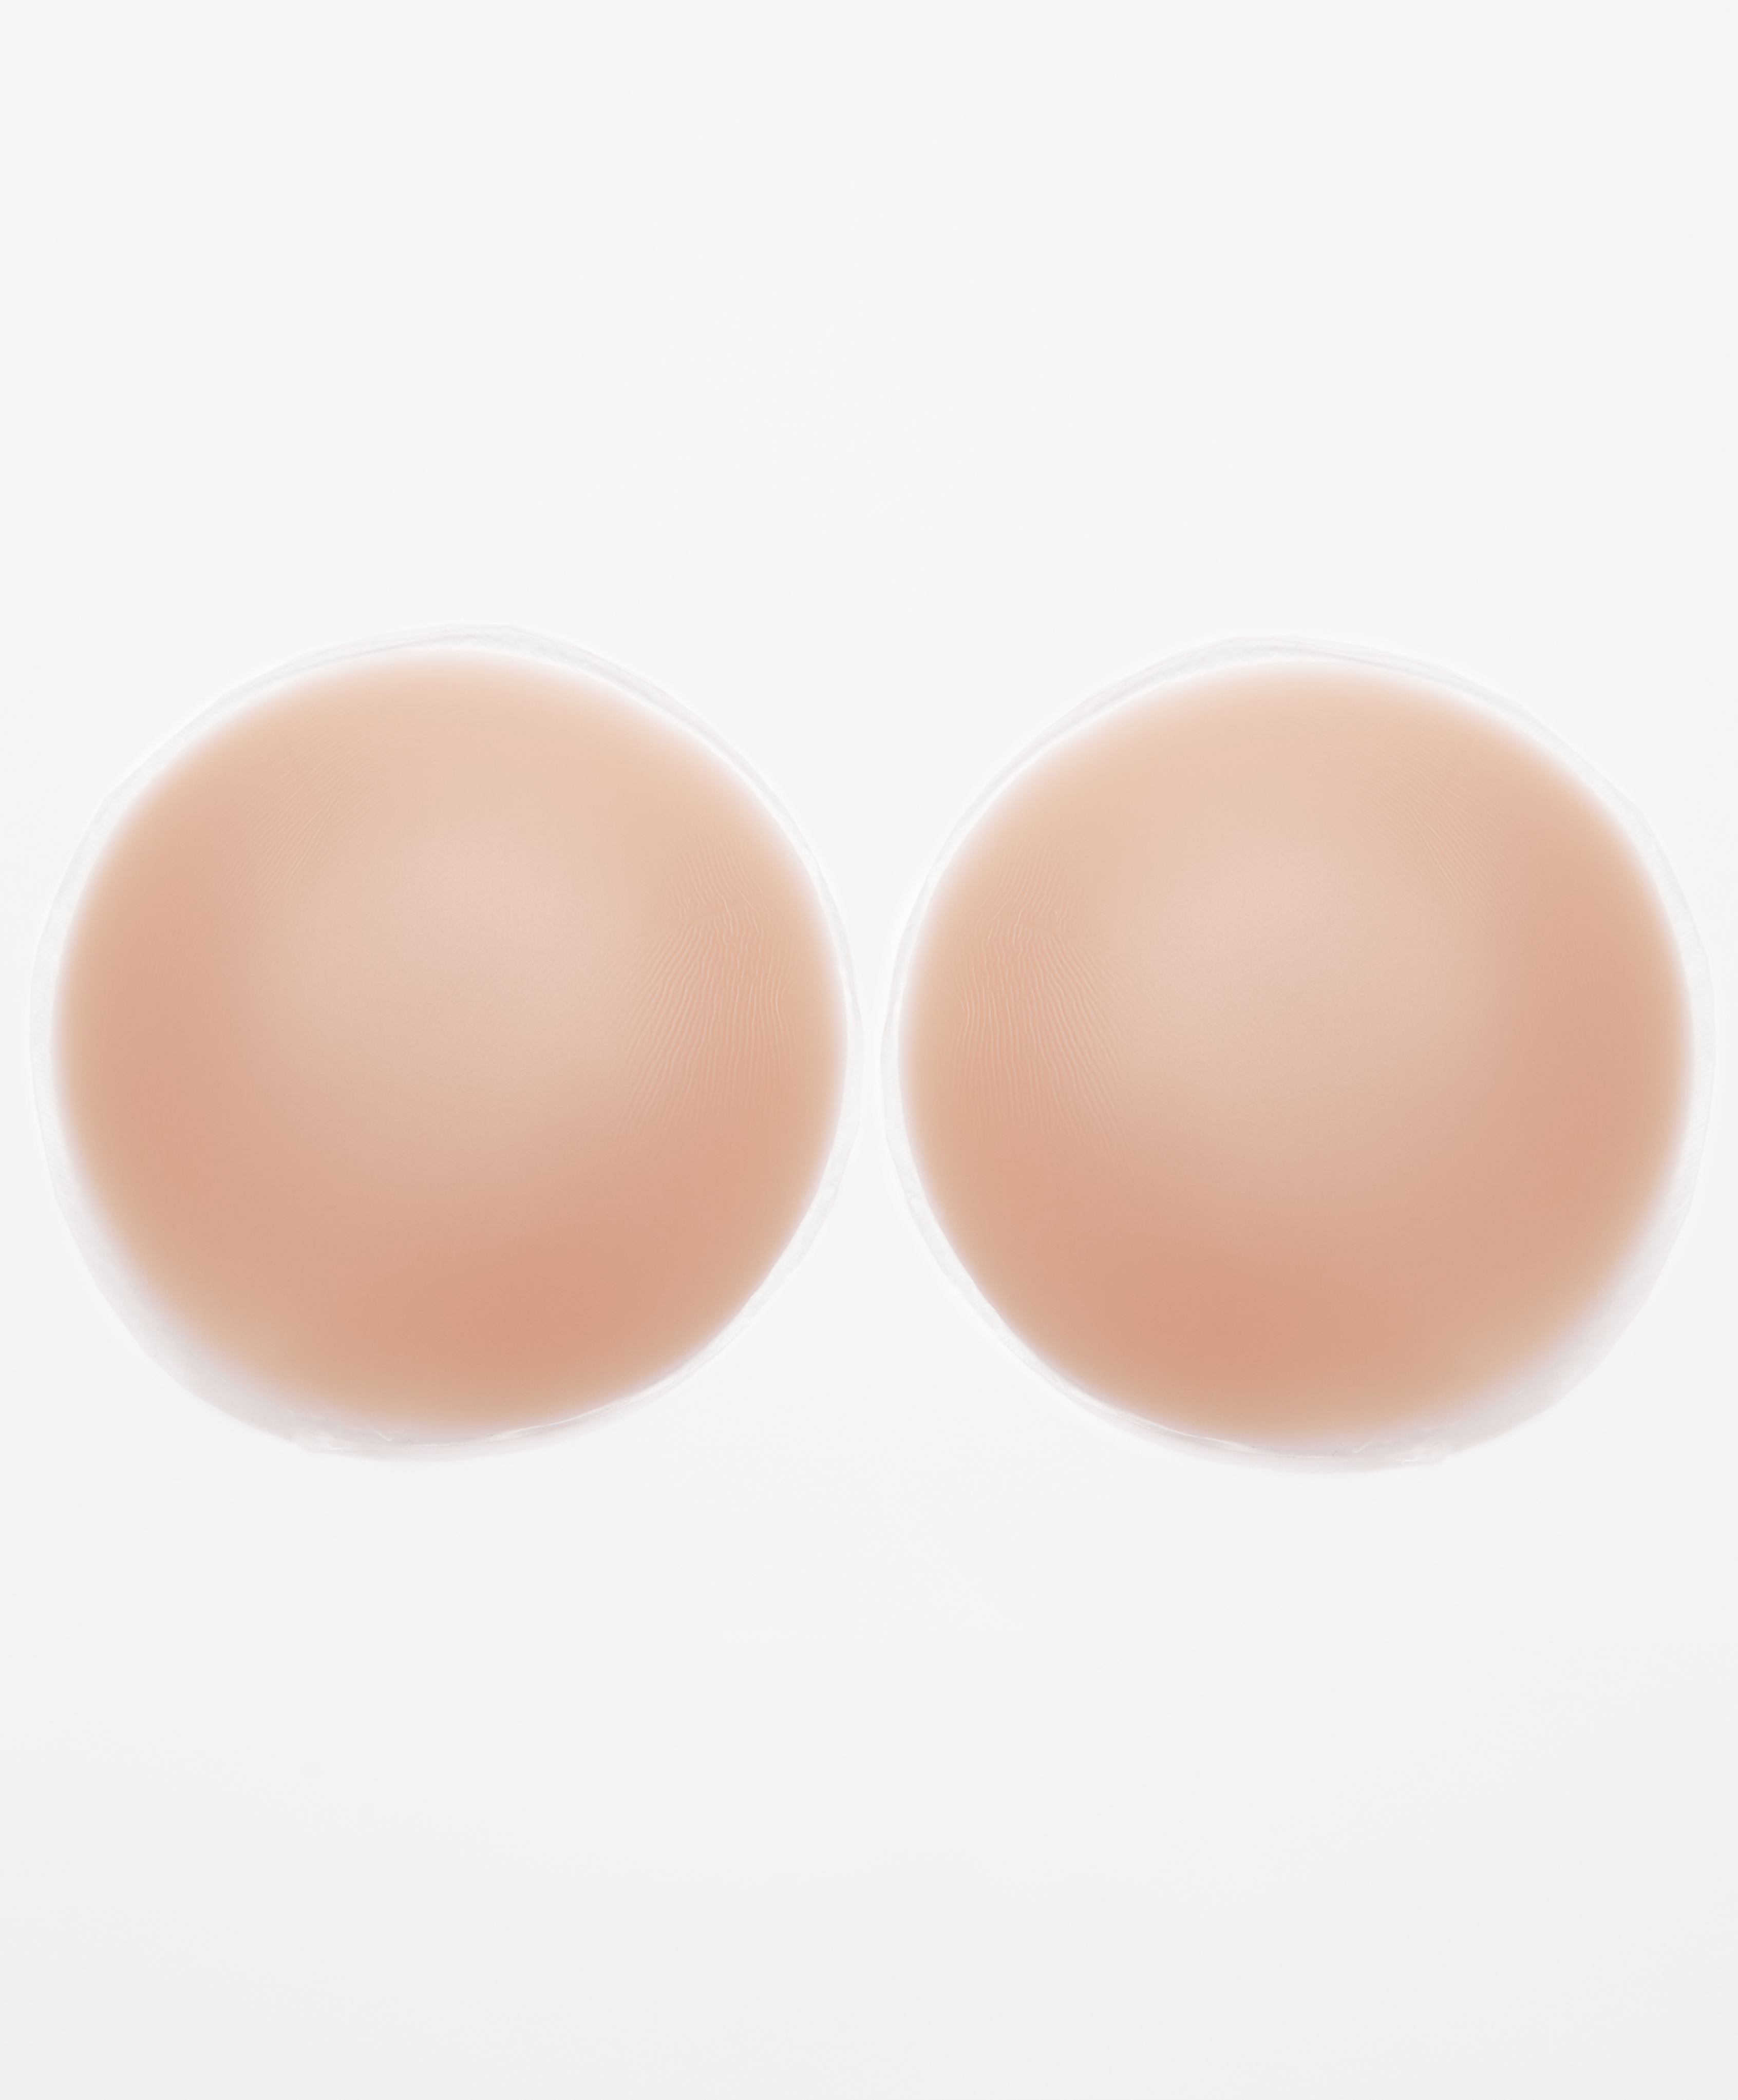 nombre de la marca violación Sumamente elegante Large adhesive silicone nipple covers | OYSHO United States